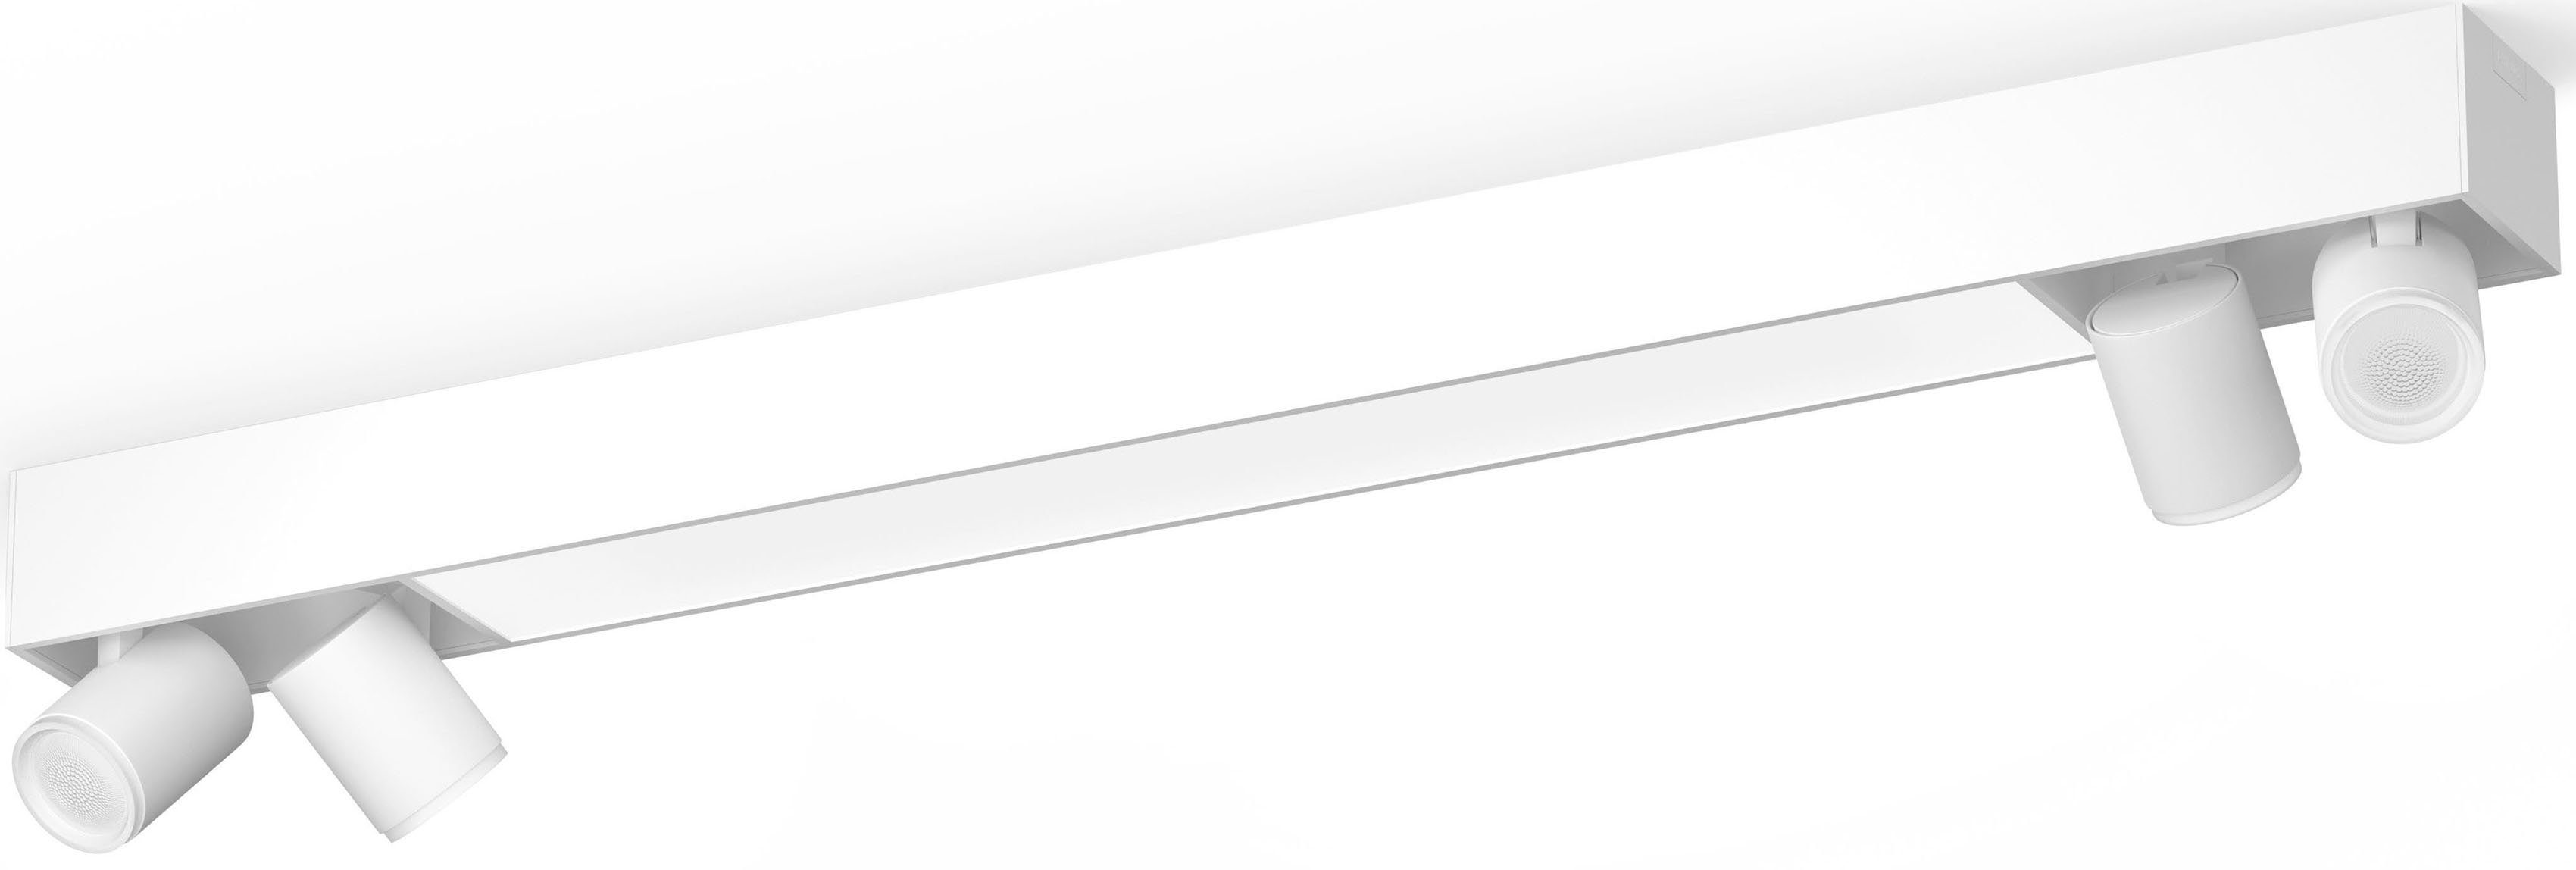 Philips Hue LED Deckenspot Centris, LED wechselbar, Farbwechsler, Individ. Lampeneinstellungen mit der Hue App, Lampen einzeln anpassbar | Deckenstrahler